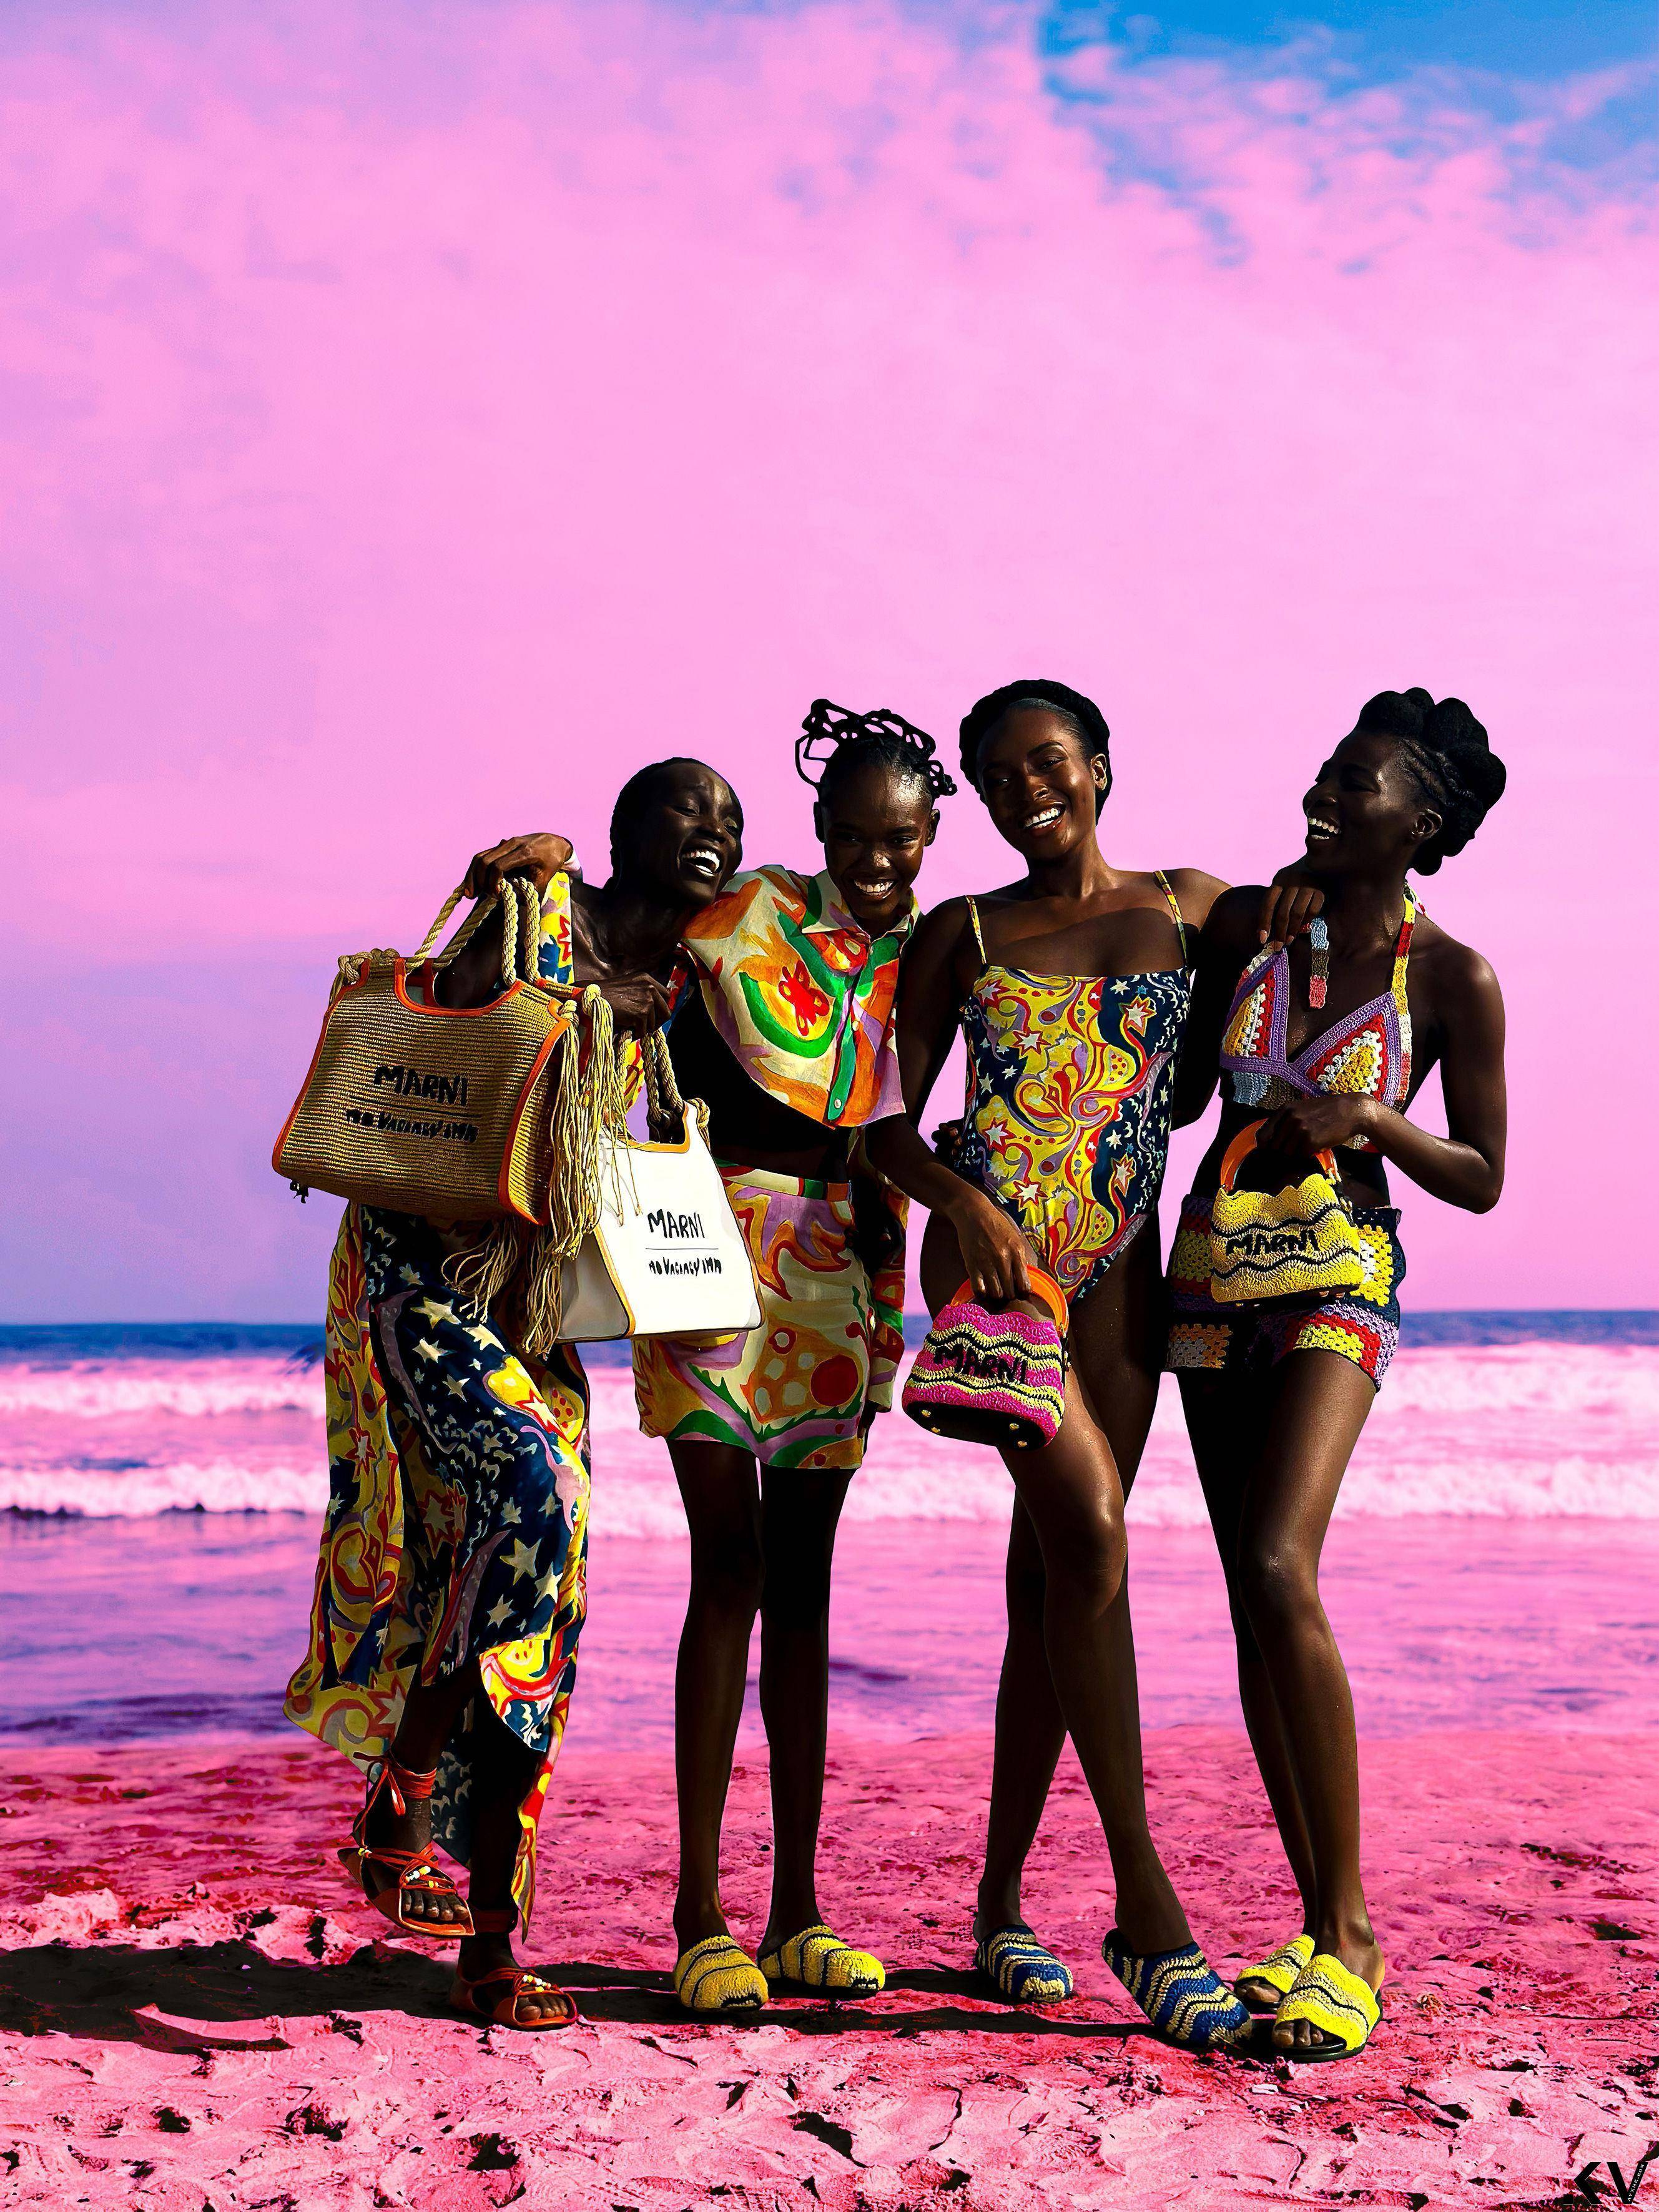 MARNI携手潮牌打造最吸睛海滩系列　彩色针织服、草编包巨可爱 时尚穿搭 图1张